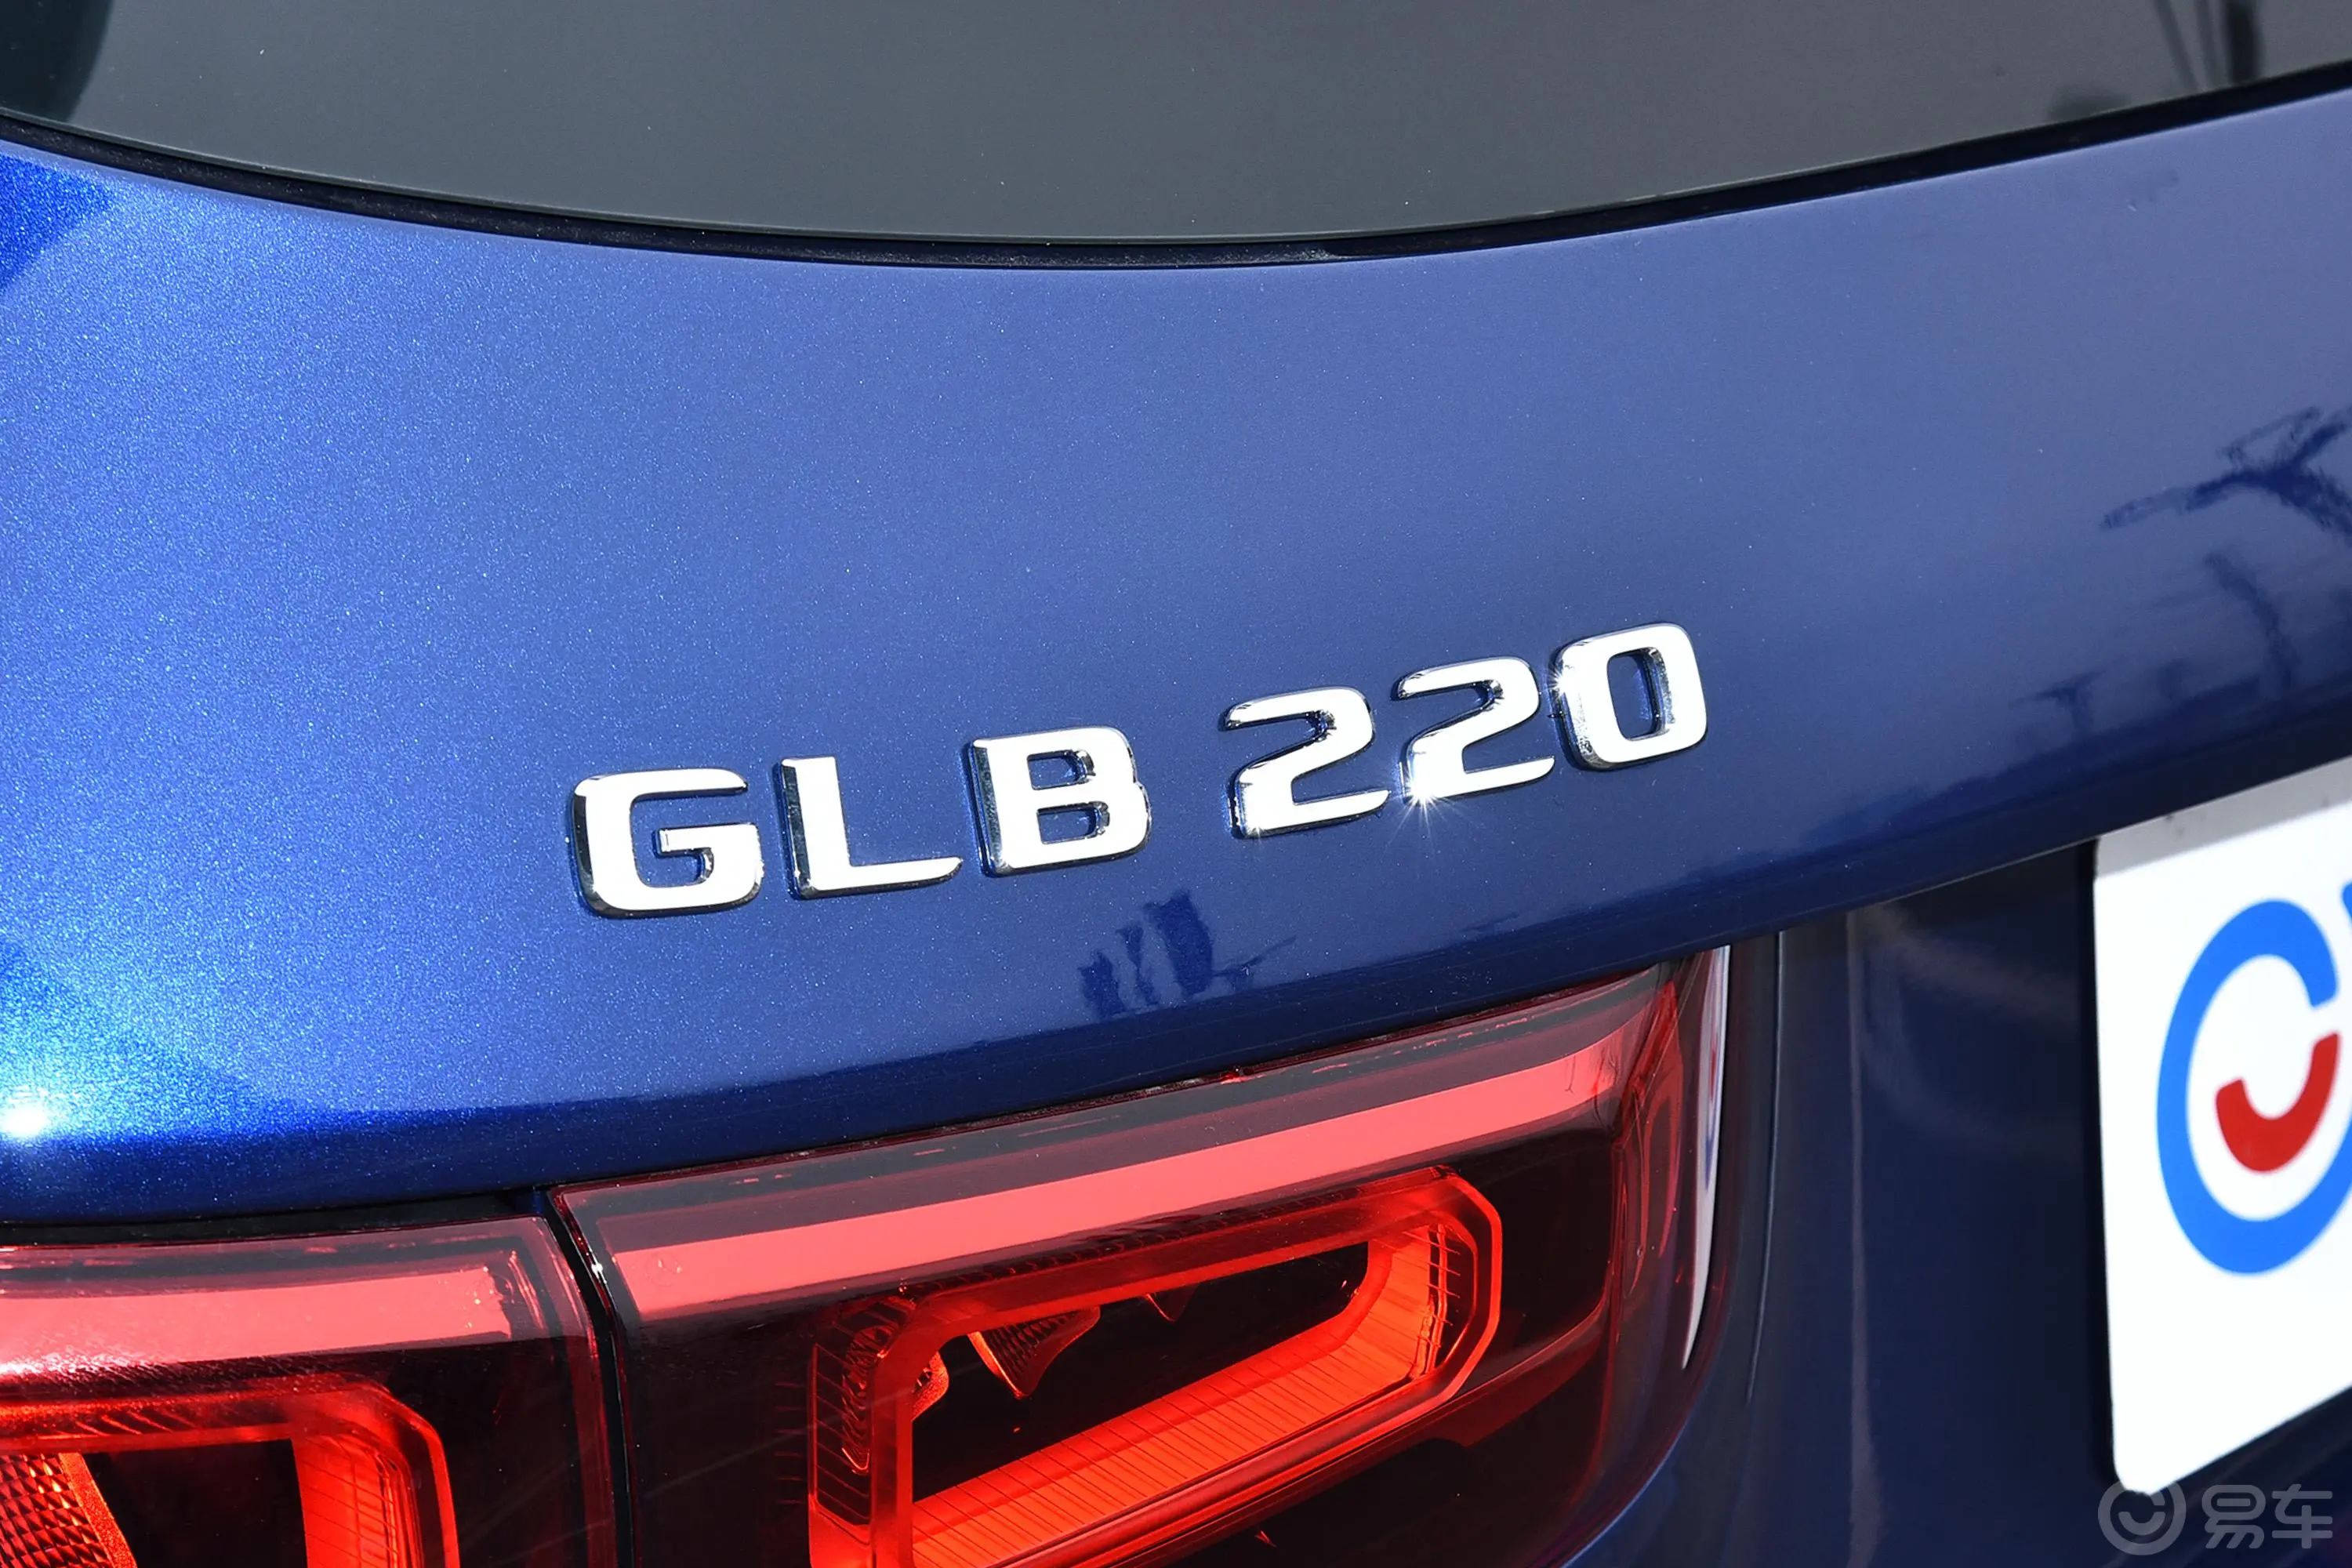 奔驰GLBGLB 220 动感型外观细节